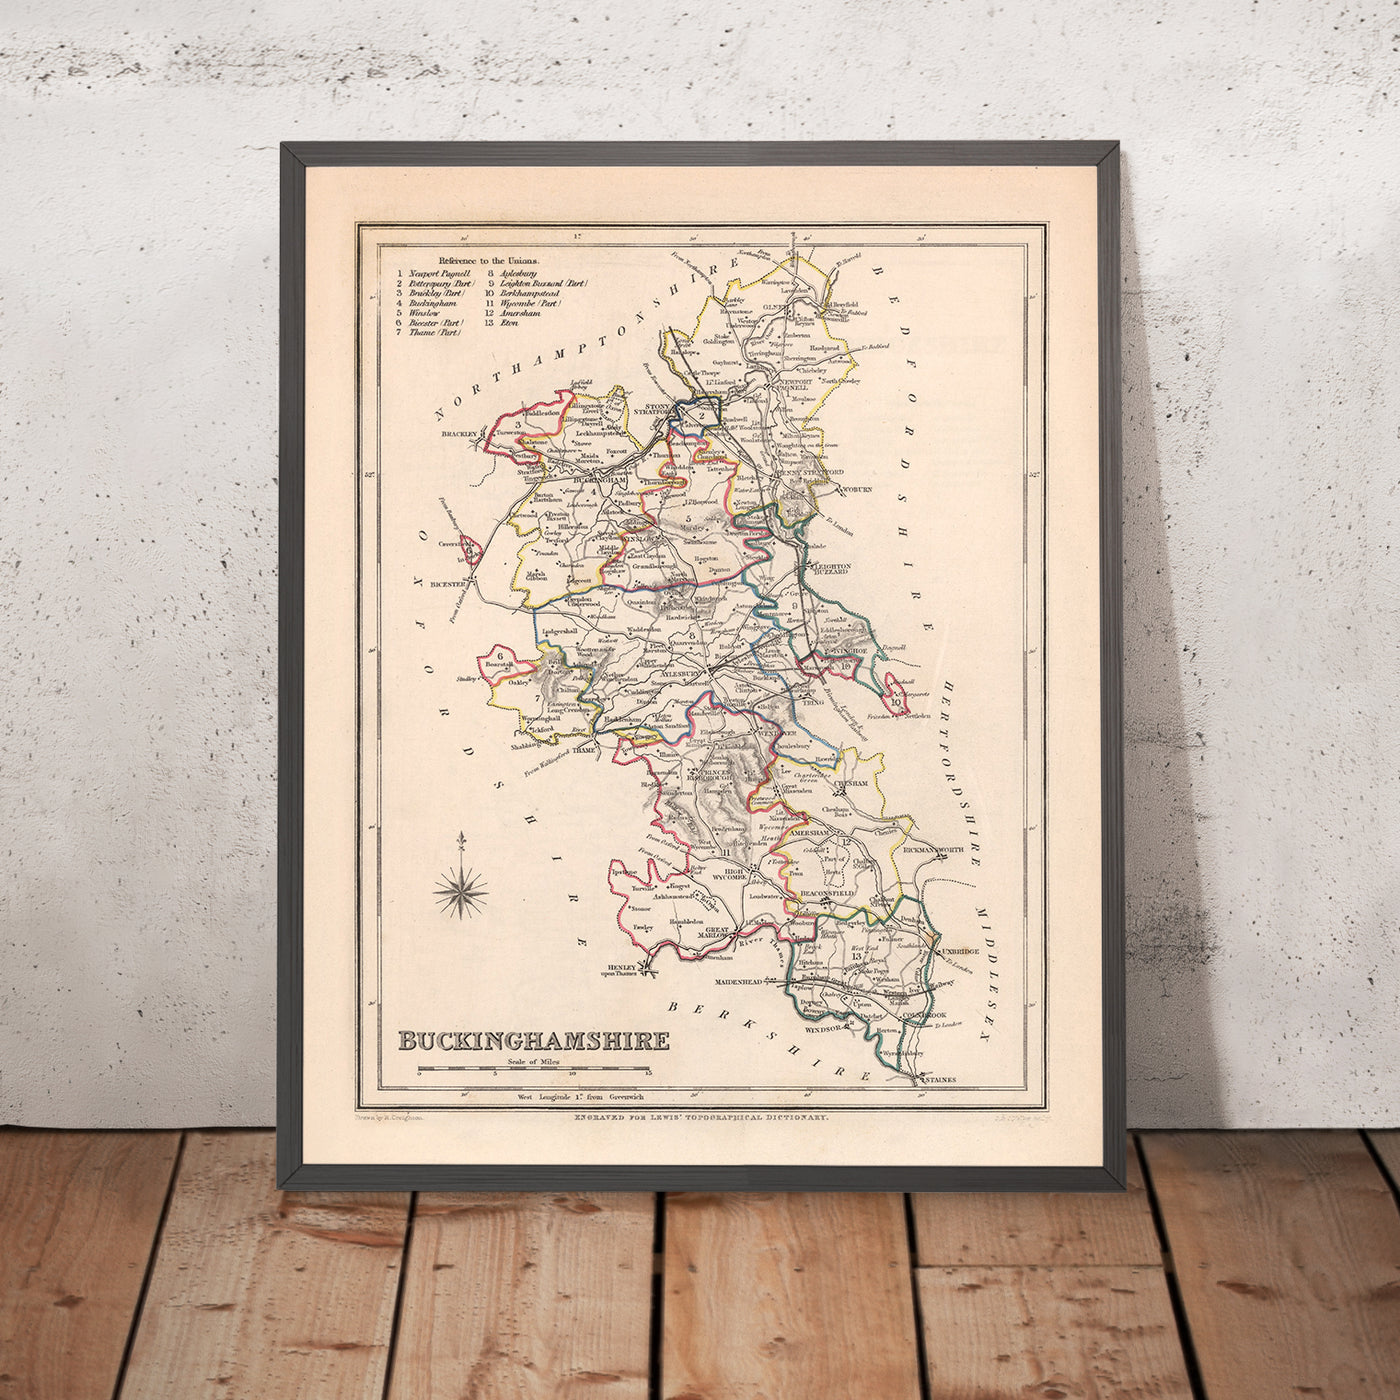 Alte Karte von Buckinghamshire von Samuel Lewis, 1844: Aylesbury, High Wycombe, Milton Keynes, Marlow, Amersham, Chesham